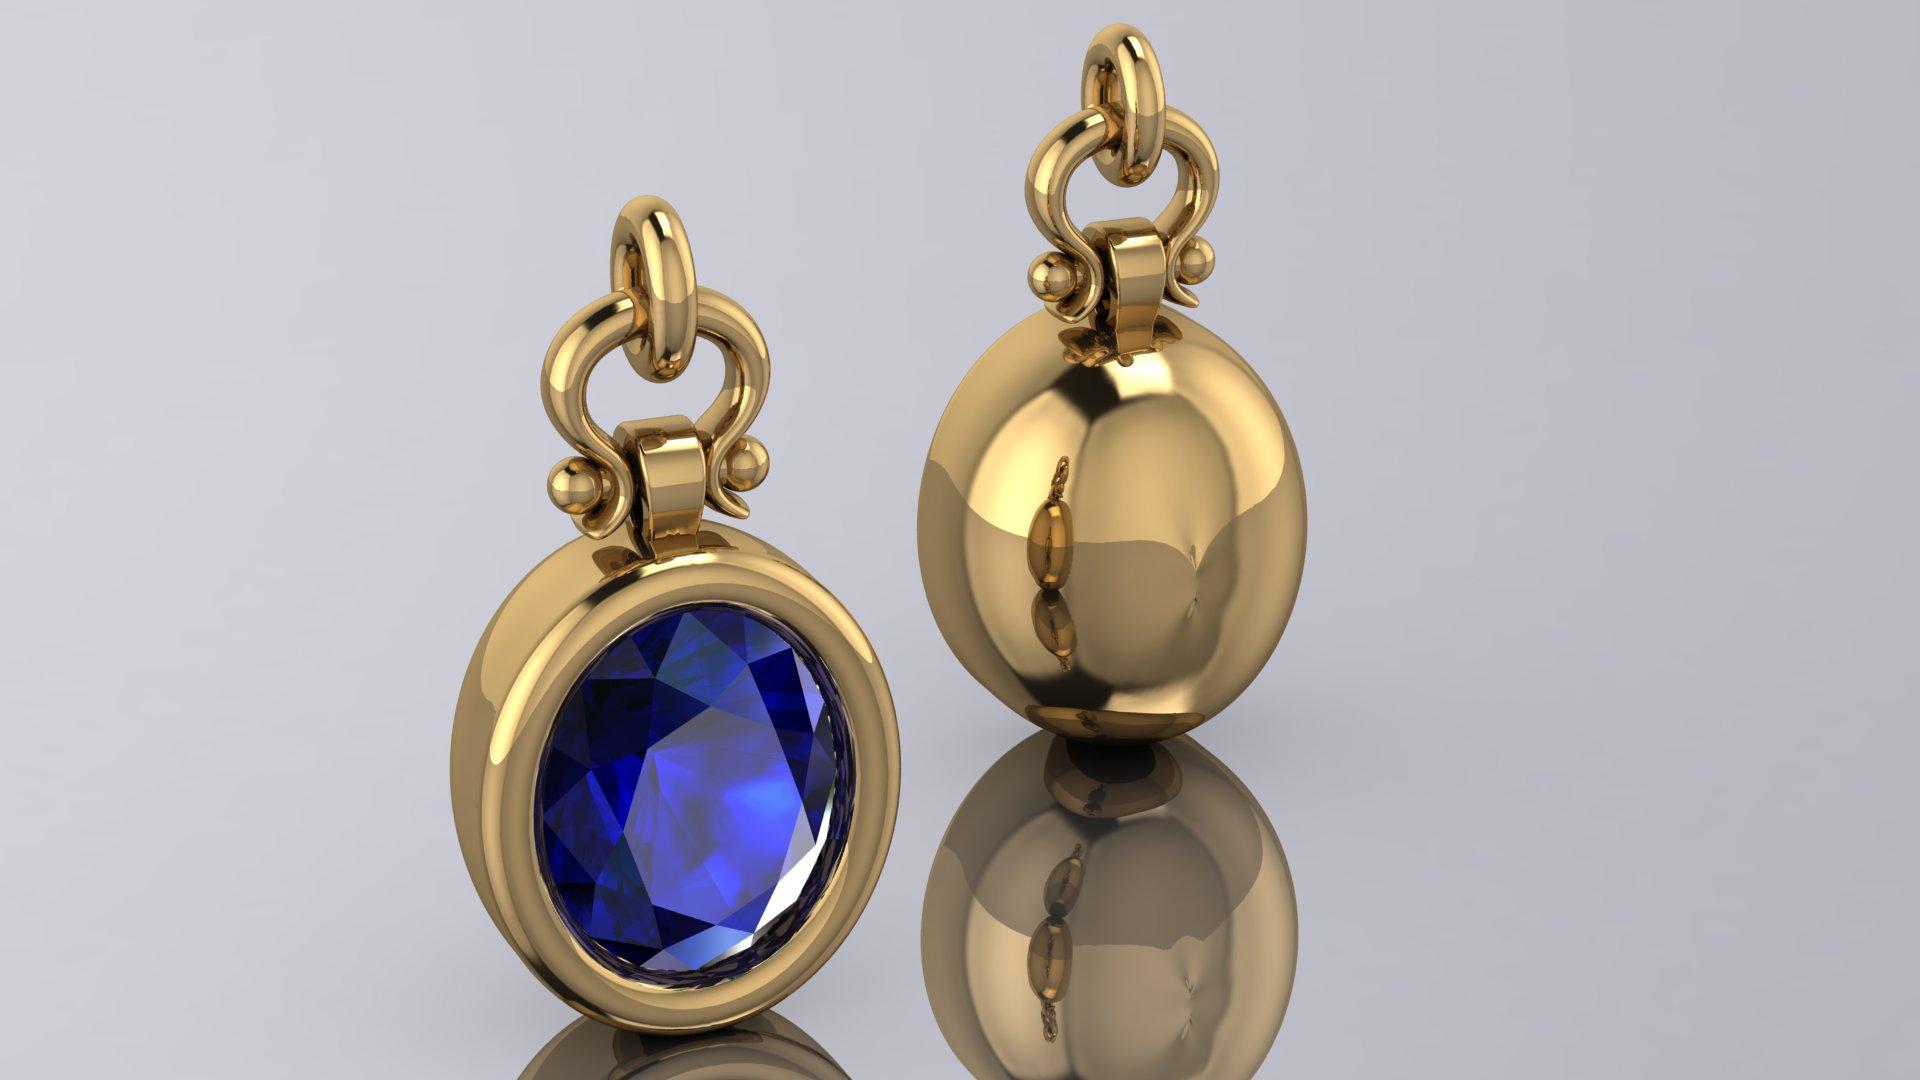 Oval Cut Berberyn Certified 4.28 Carat Oval Blue Sapphire Pendant Necklace in 18k For Sale